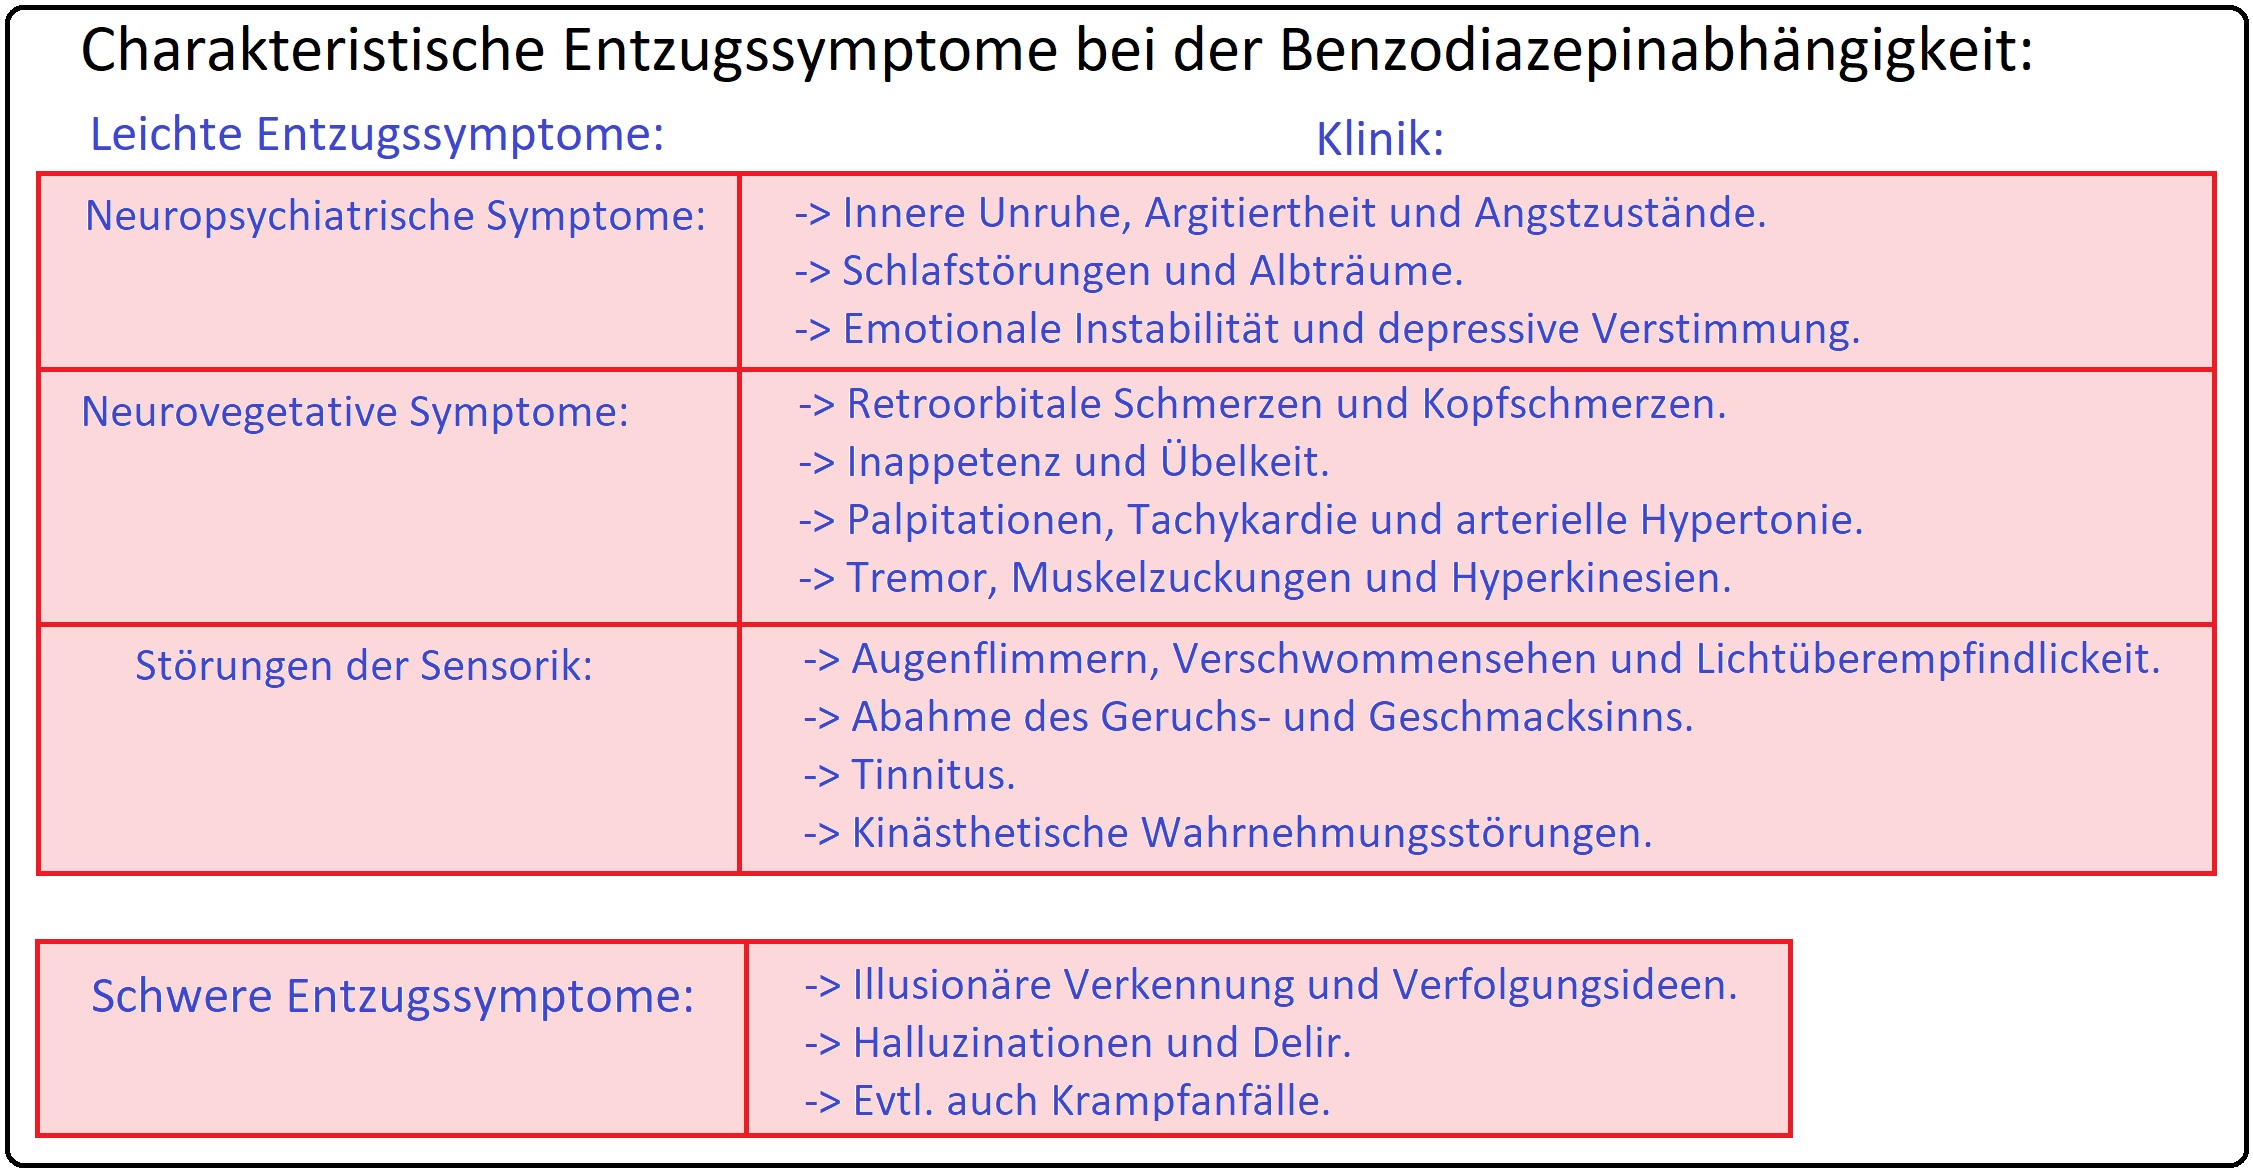 536 Charakteristische Entzugssymptome bei der Benzodiazepinabhängigkeit